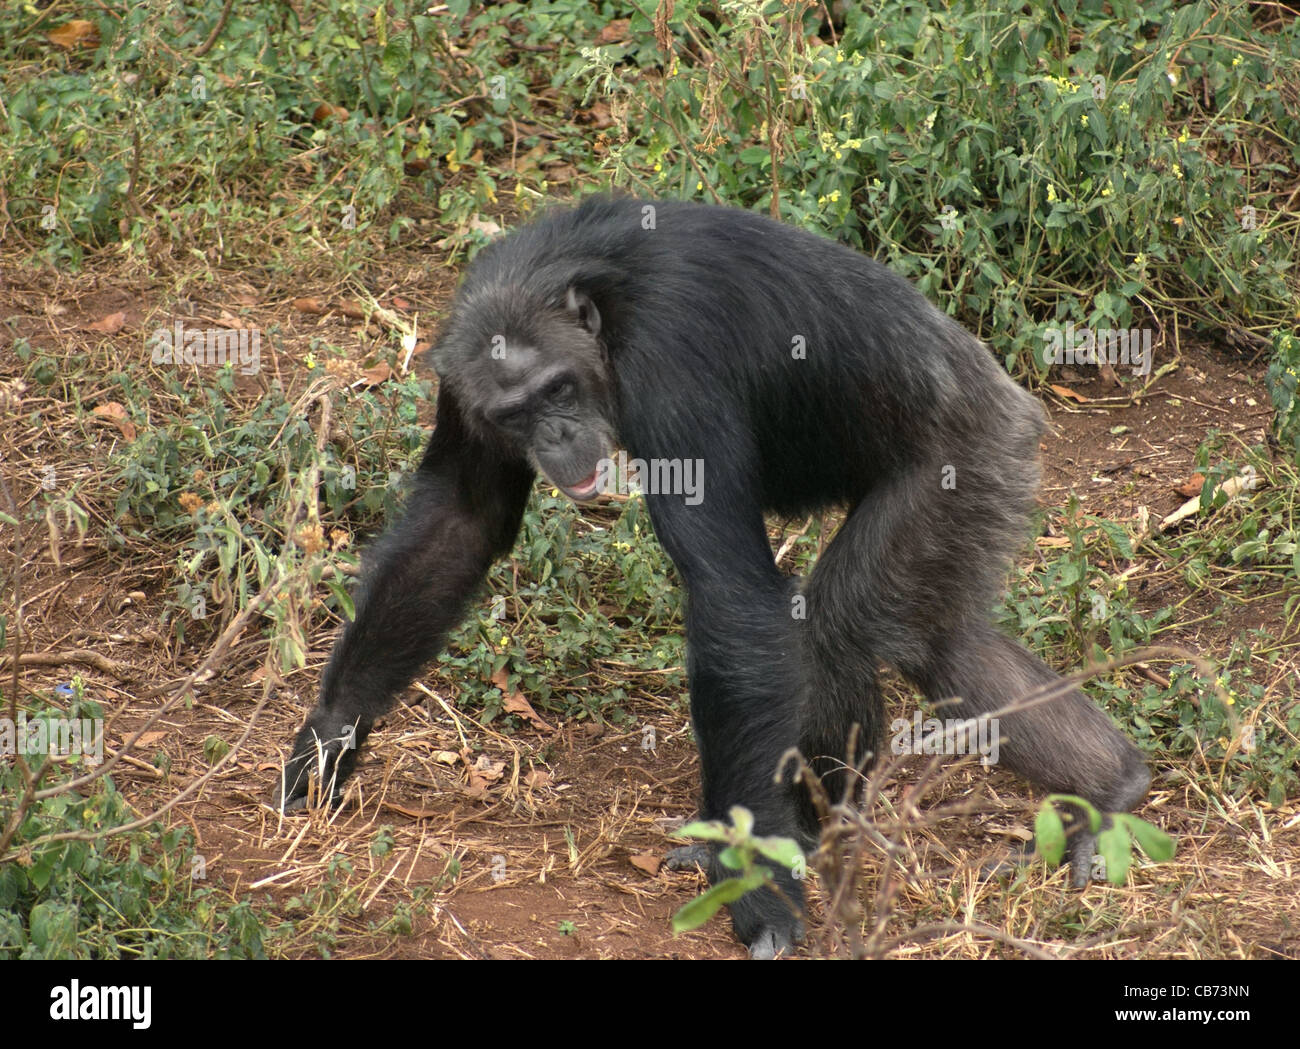 Tourné en extérieur de l'Ouganda (Afrique) montrant un chimpanzé marche sur le sol avec un peu de végétation Banque D'Images